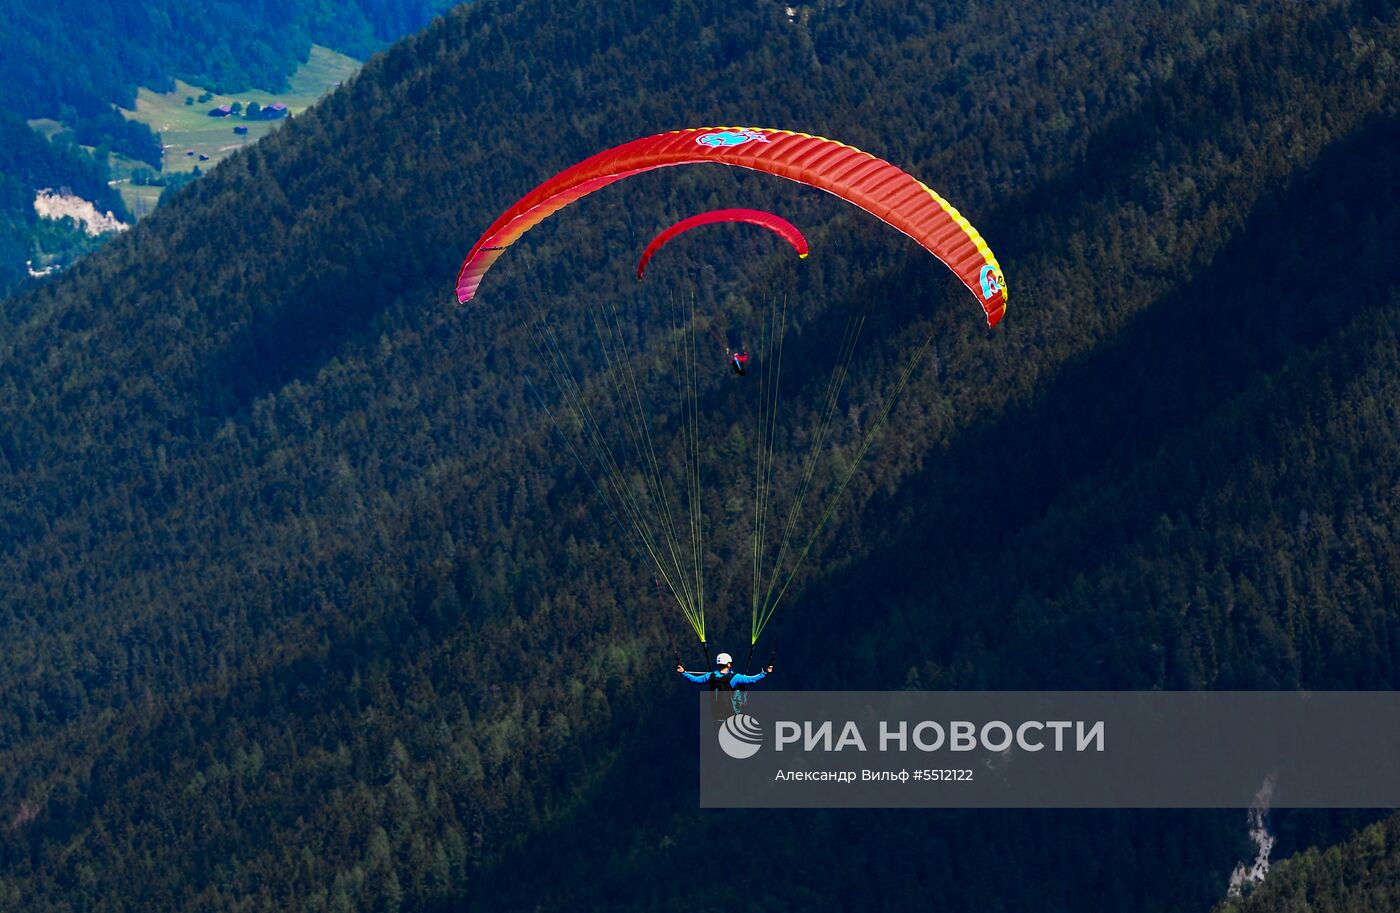 Полёты парапланеристов над австрийской долиной Штубайталь